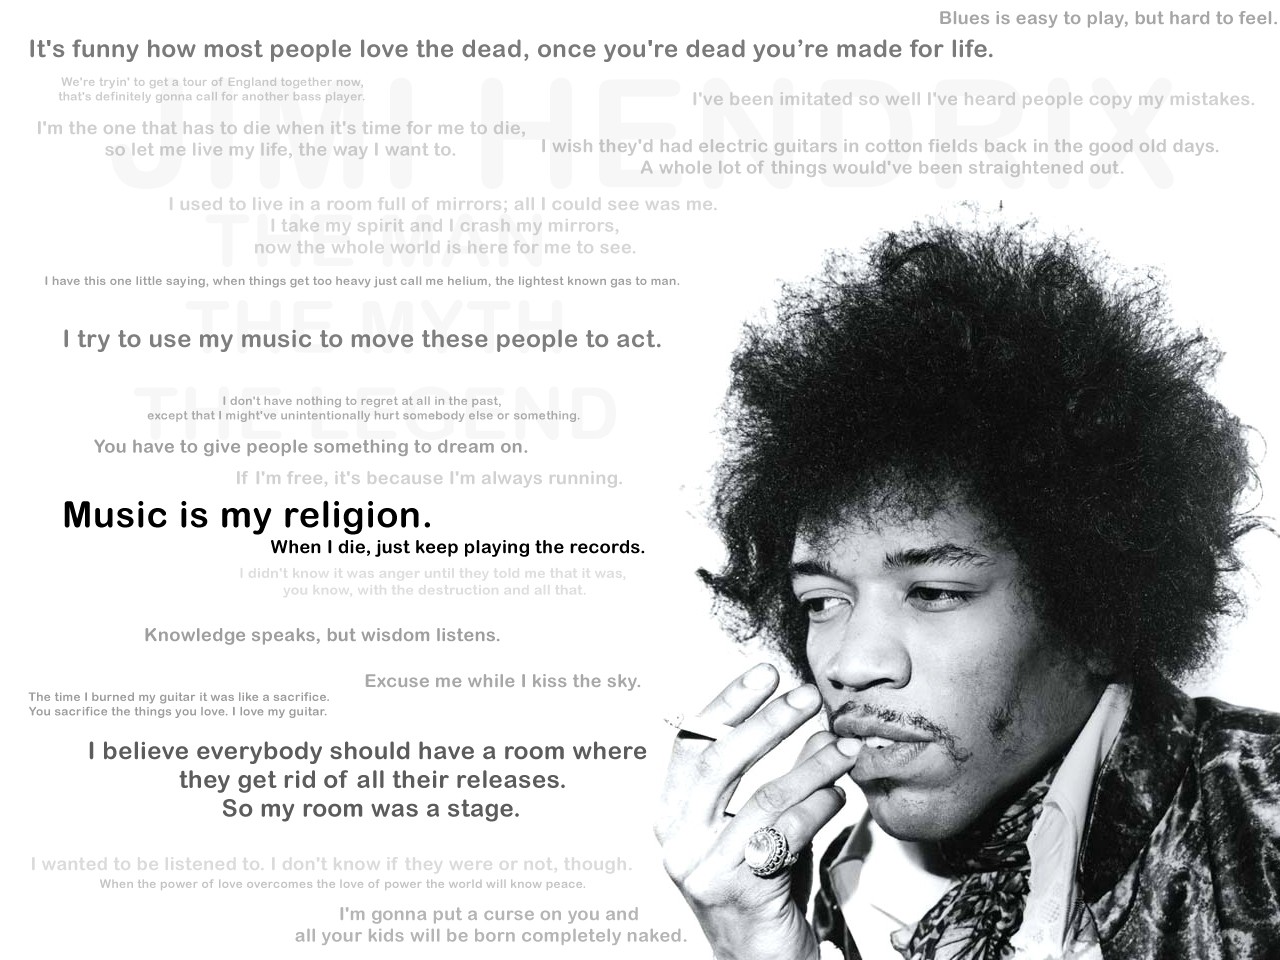 People 1280x960 men singer Jimi Hendrix guitar blues rock legends afro quote monochrome face cigarettes musician